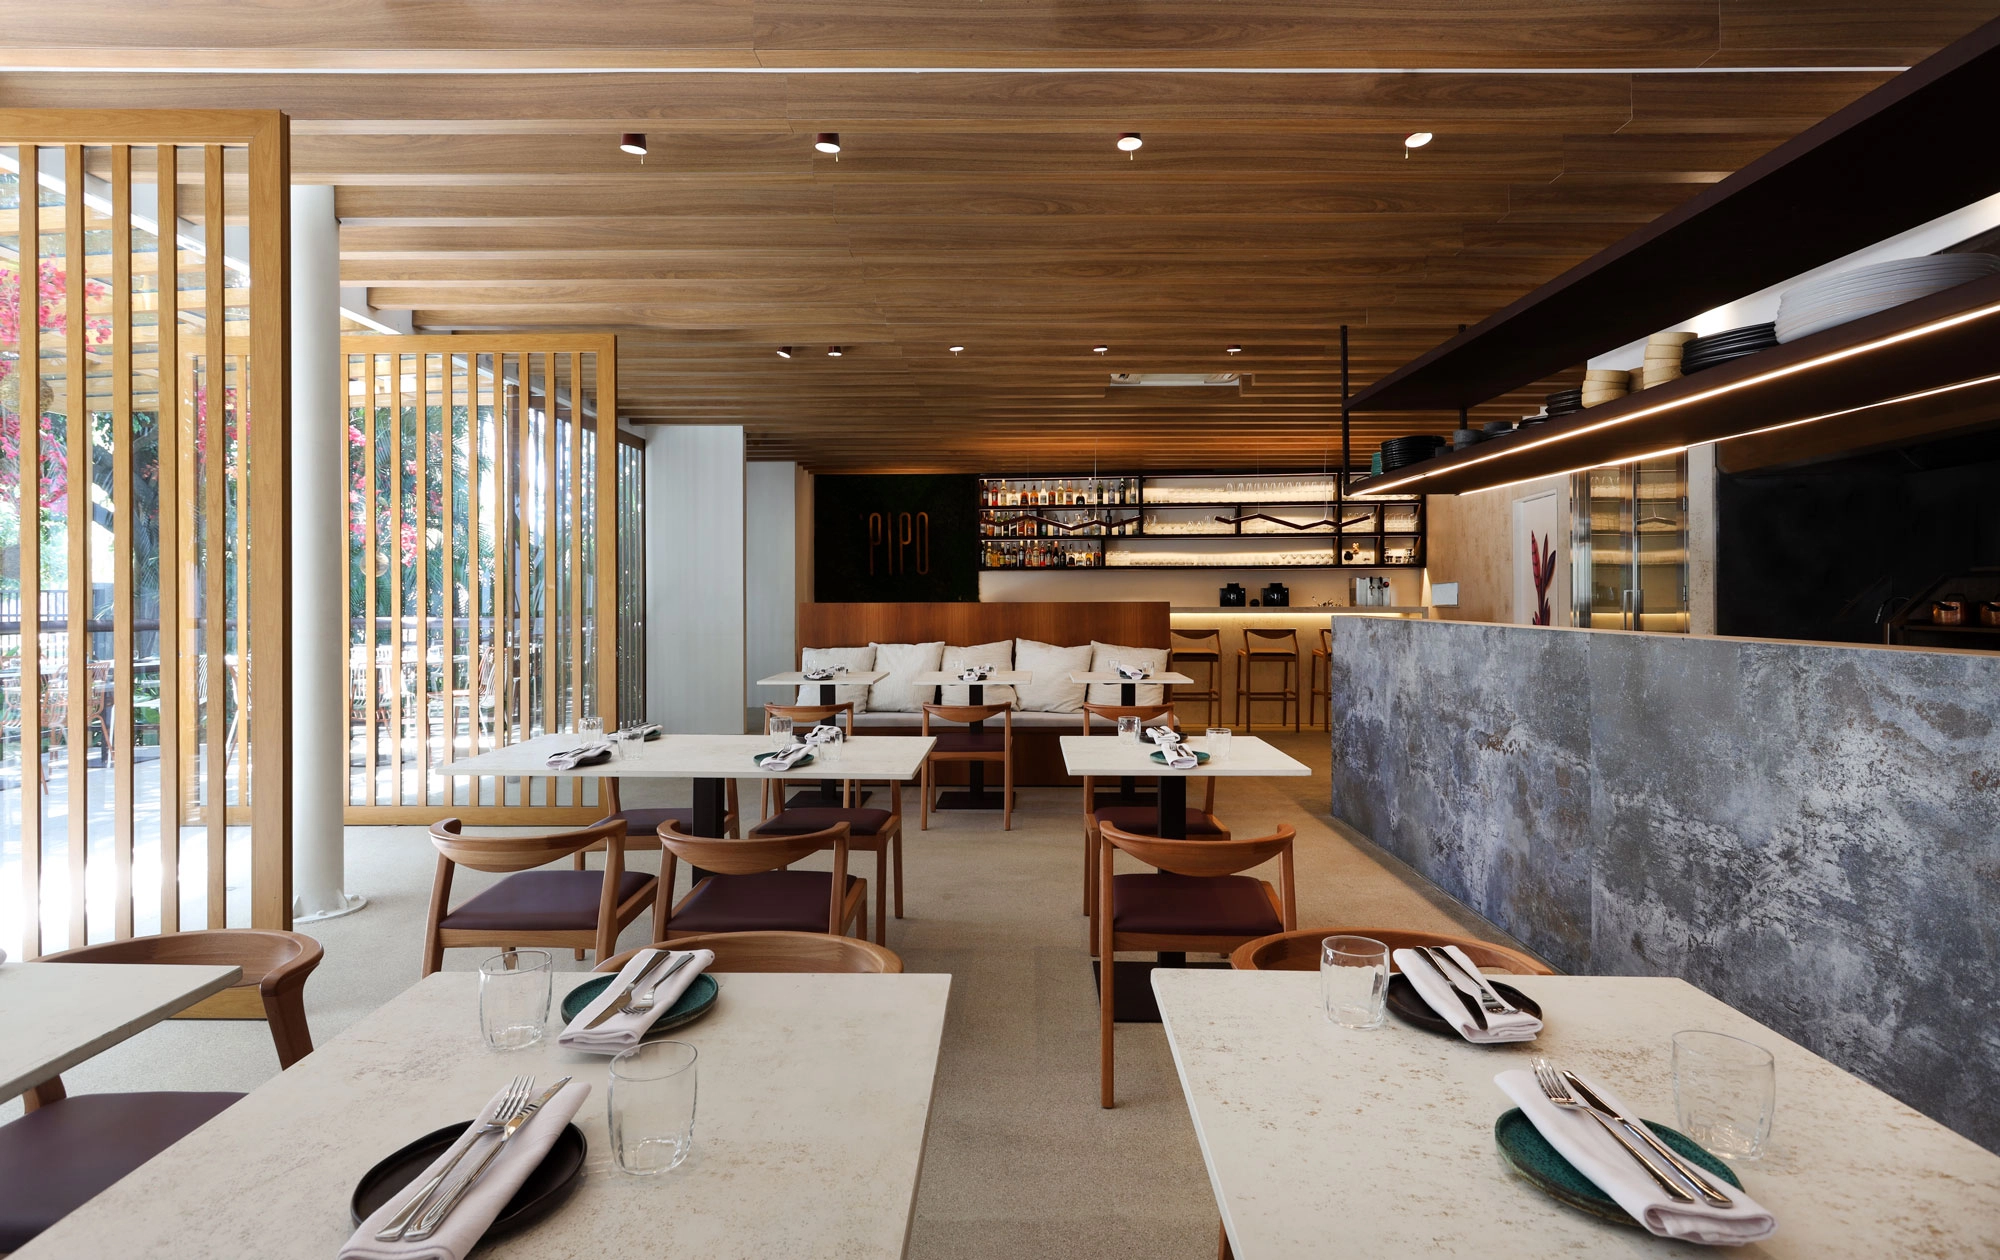 Image of Restaurante Pipo 7 in Luxury interior spaces at Cape Town Stadium - Cosentino